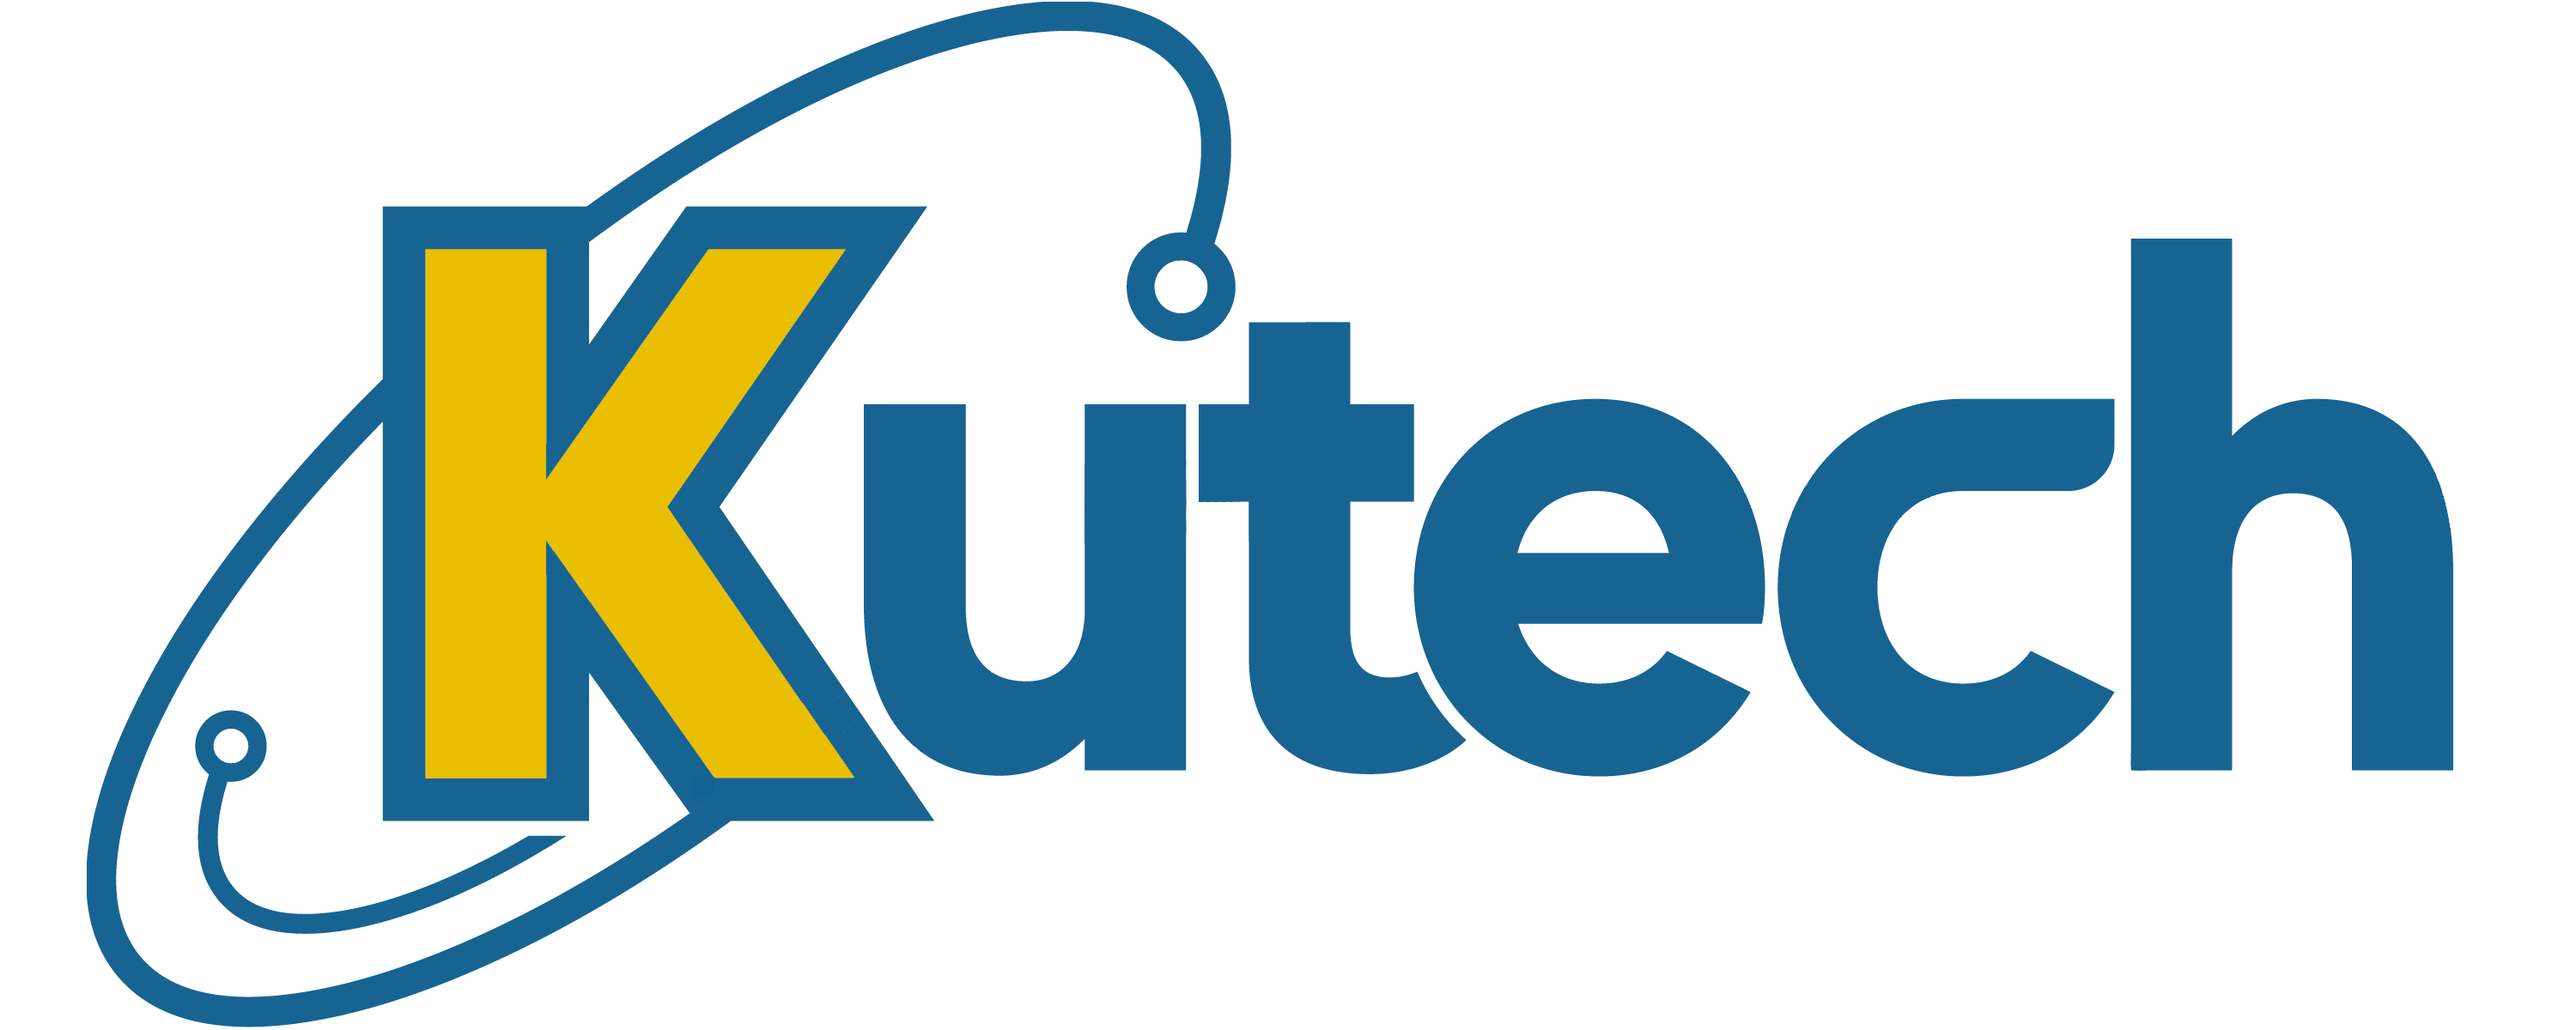 Main Kutech Logo